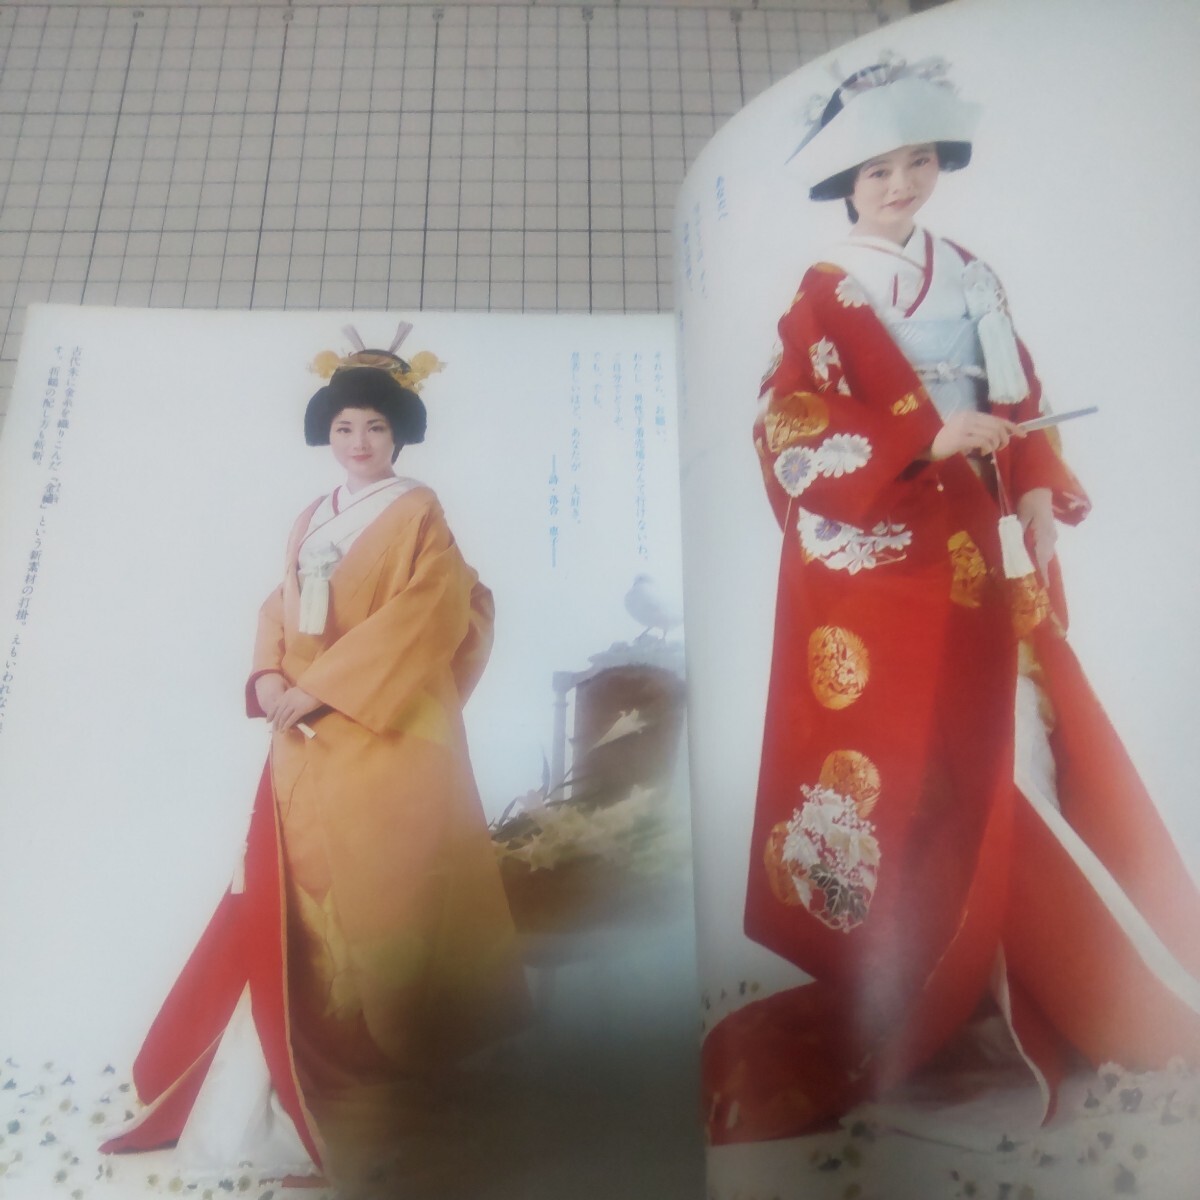 中古古本 増刊女性セブン 婦人雑誌 きもの専科 結婚特集号 1972年 の画像3